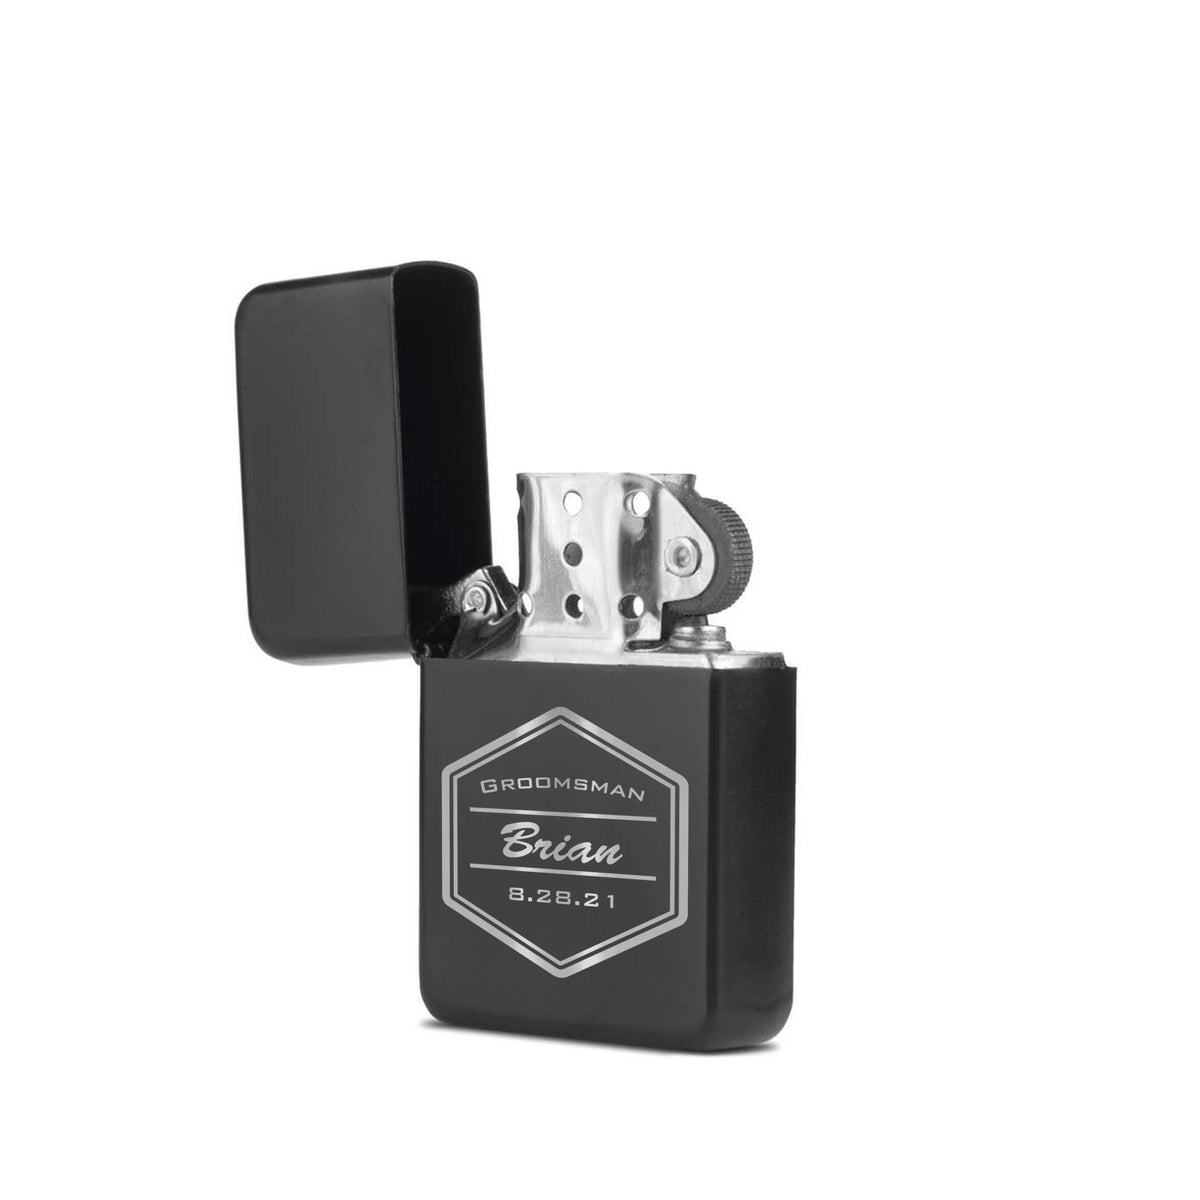 Groomsman Lighter, Engraved lighter, Personalized lighter / Laser engraved lighter w/case  Cigar lighter, Engraved lighter, Custom lighter